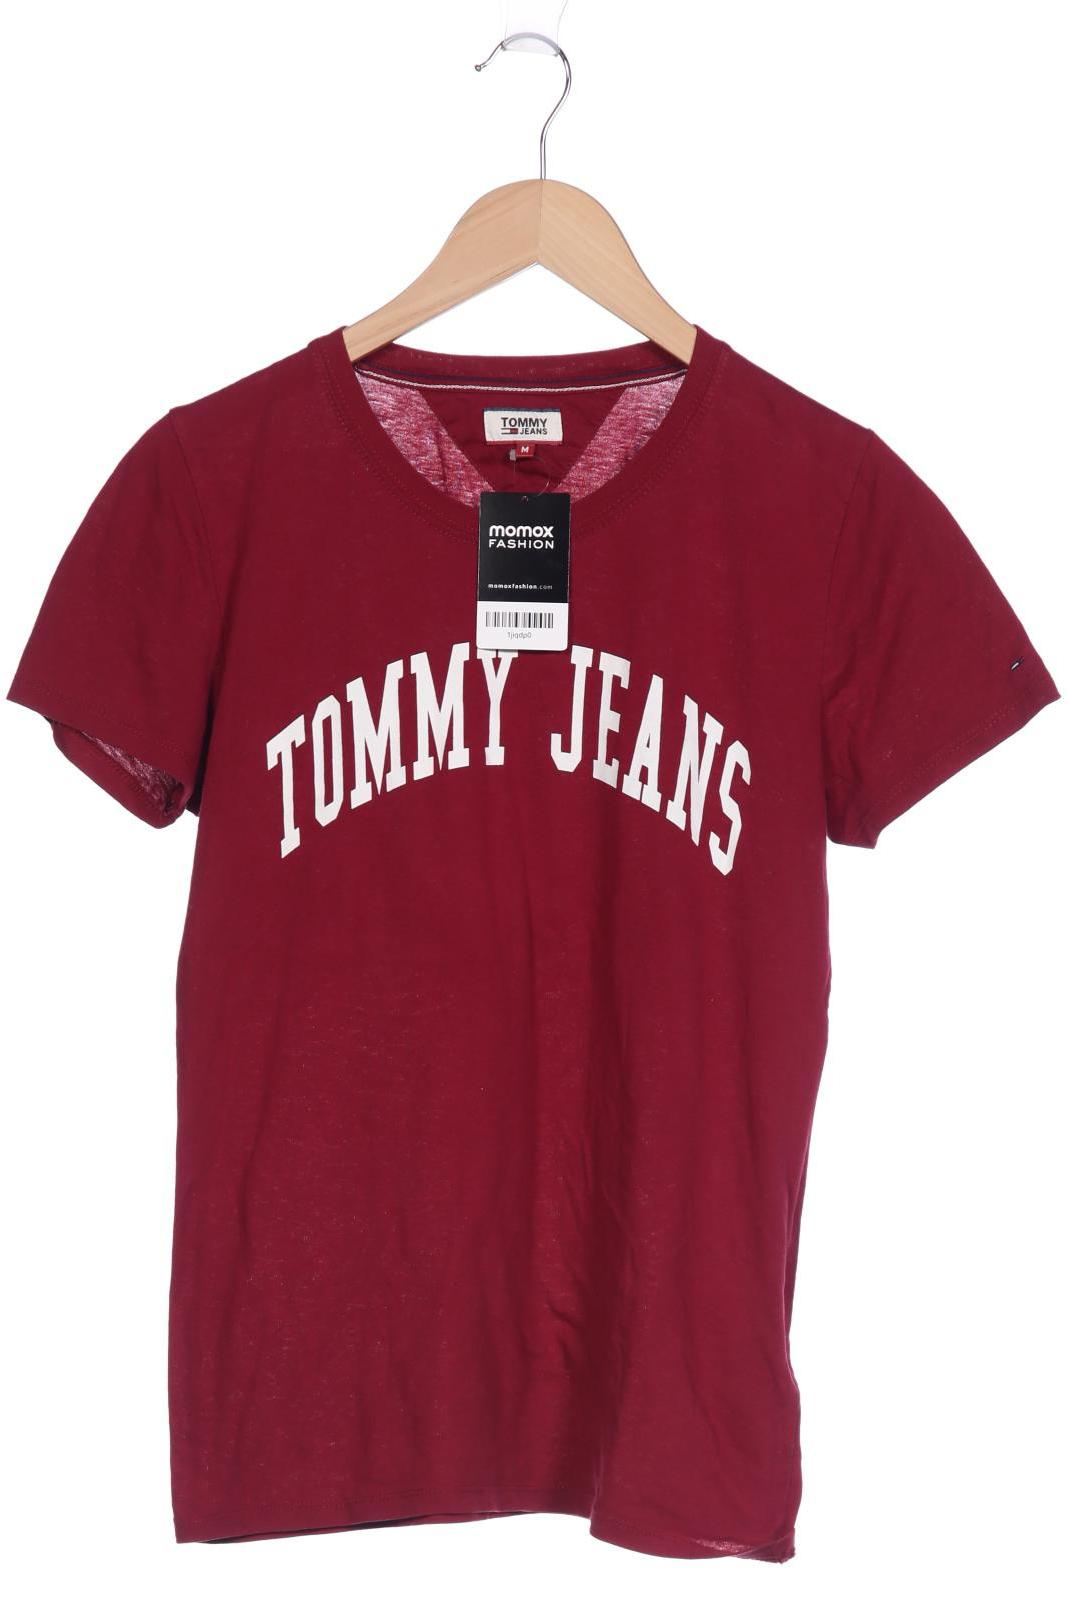 Tommy Jeans Damen T-Shirt, bordeaux, Gr. 38 von Tommy Jeans